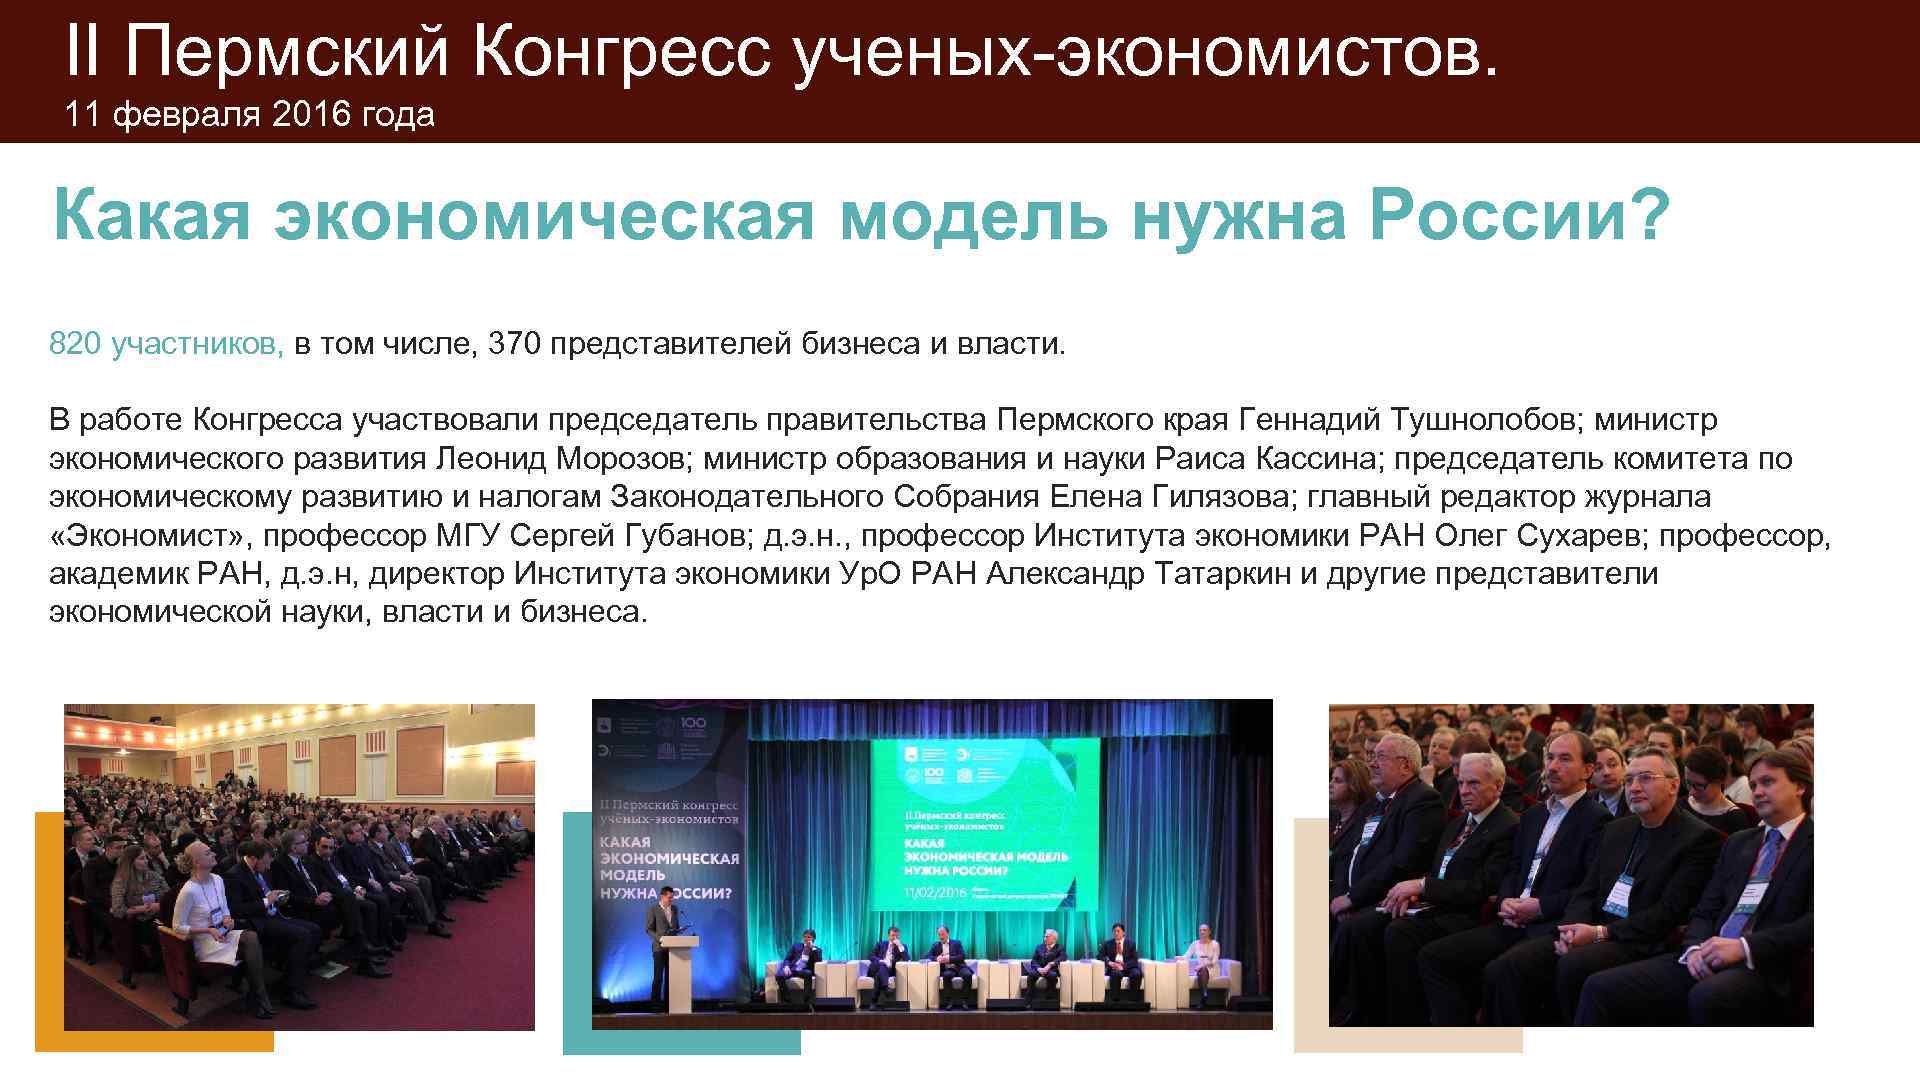 II Пермский Конгресс ученых-экономистов.  11 февраля 2016 года  Какая экономическая модель нужна